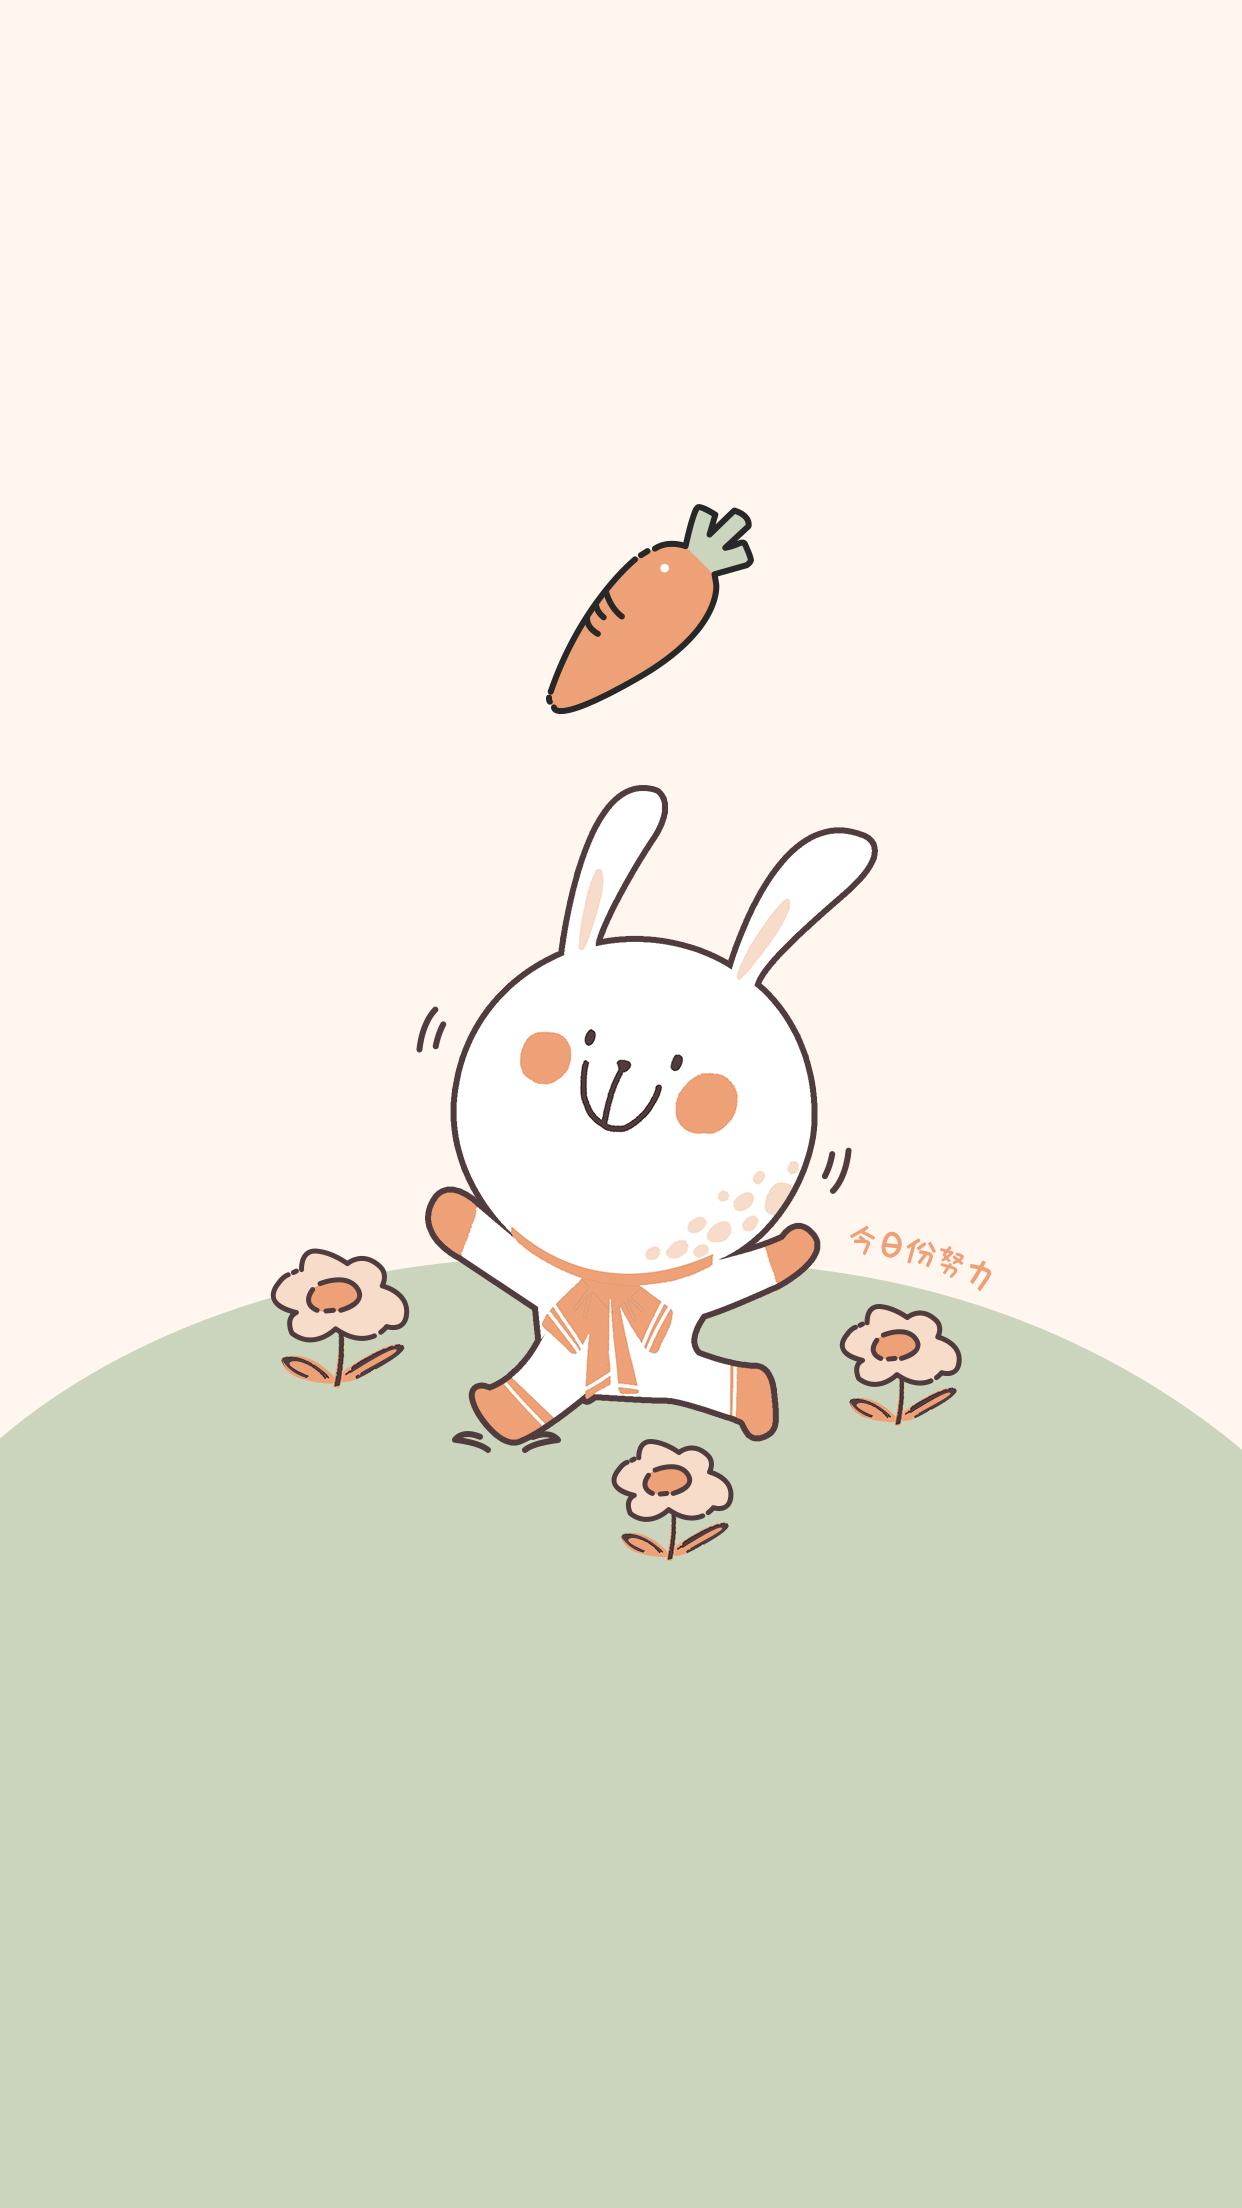 求一只卡通兔子吃胡萝卜的动态图片，急！-找一张GIF图，是一只卡通的兔子咬胡萝卜的一张